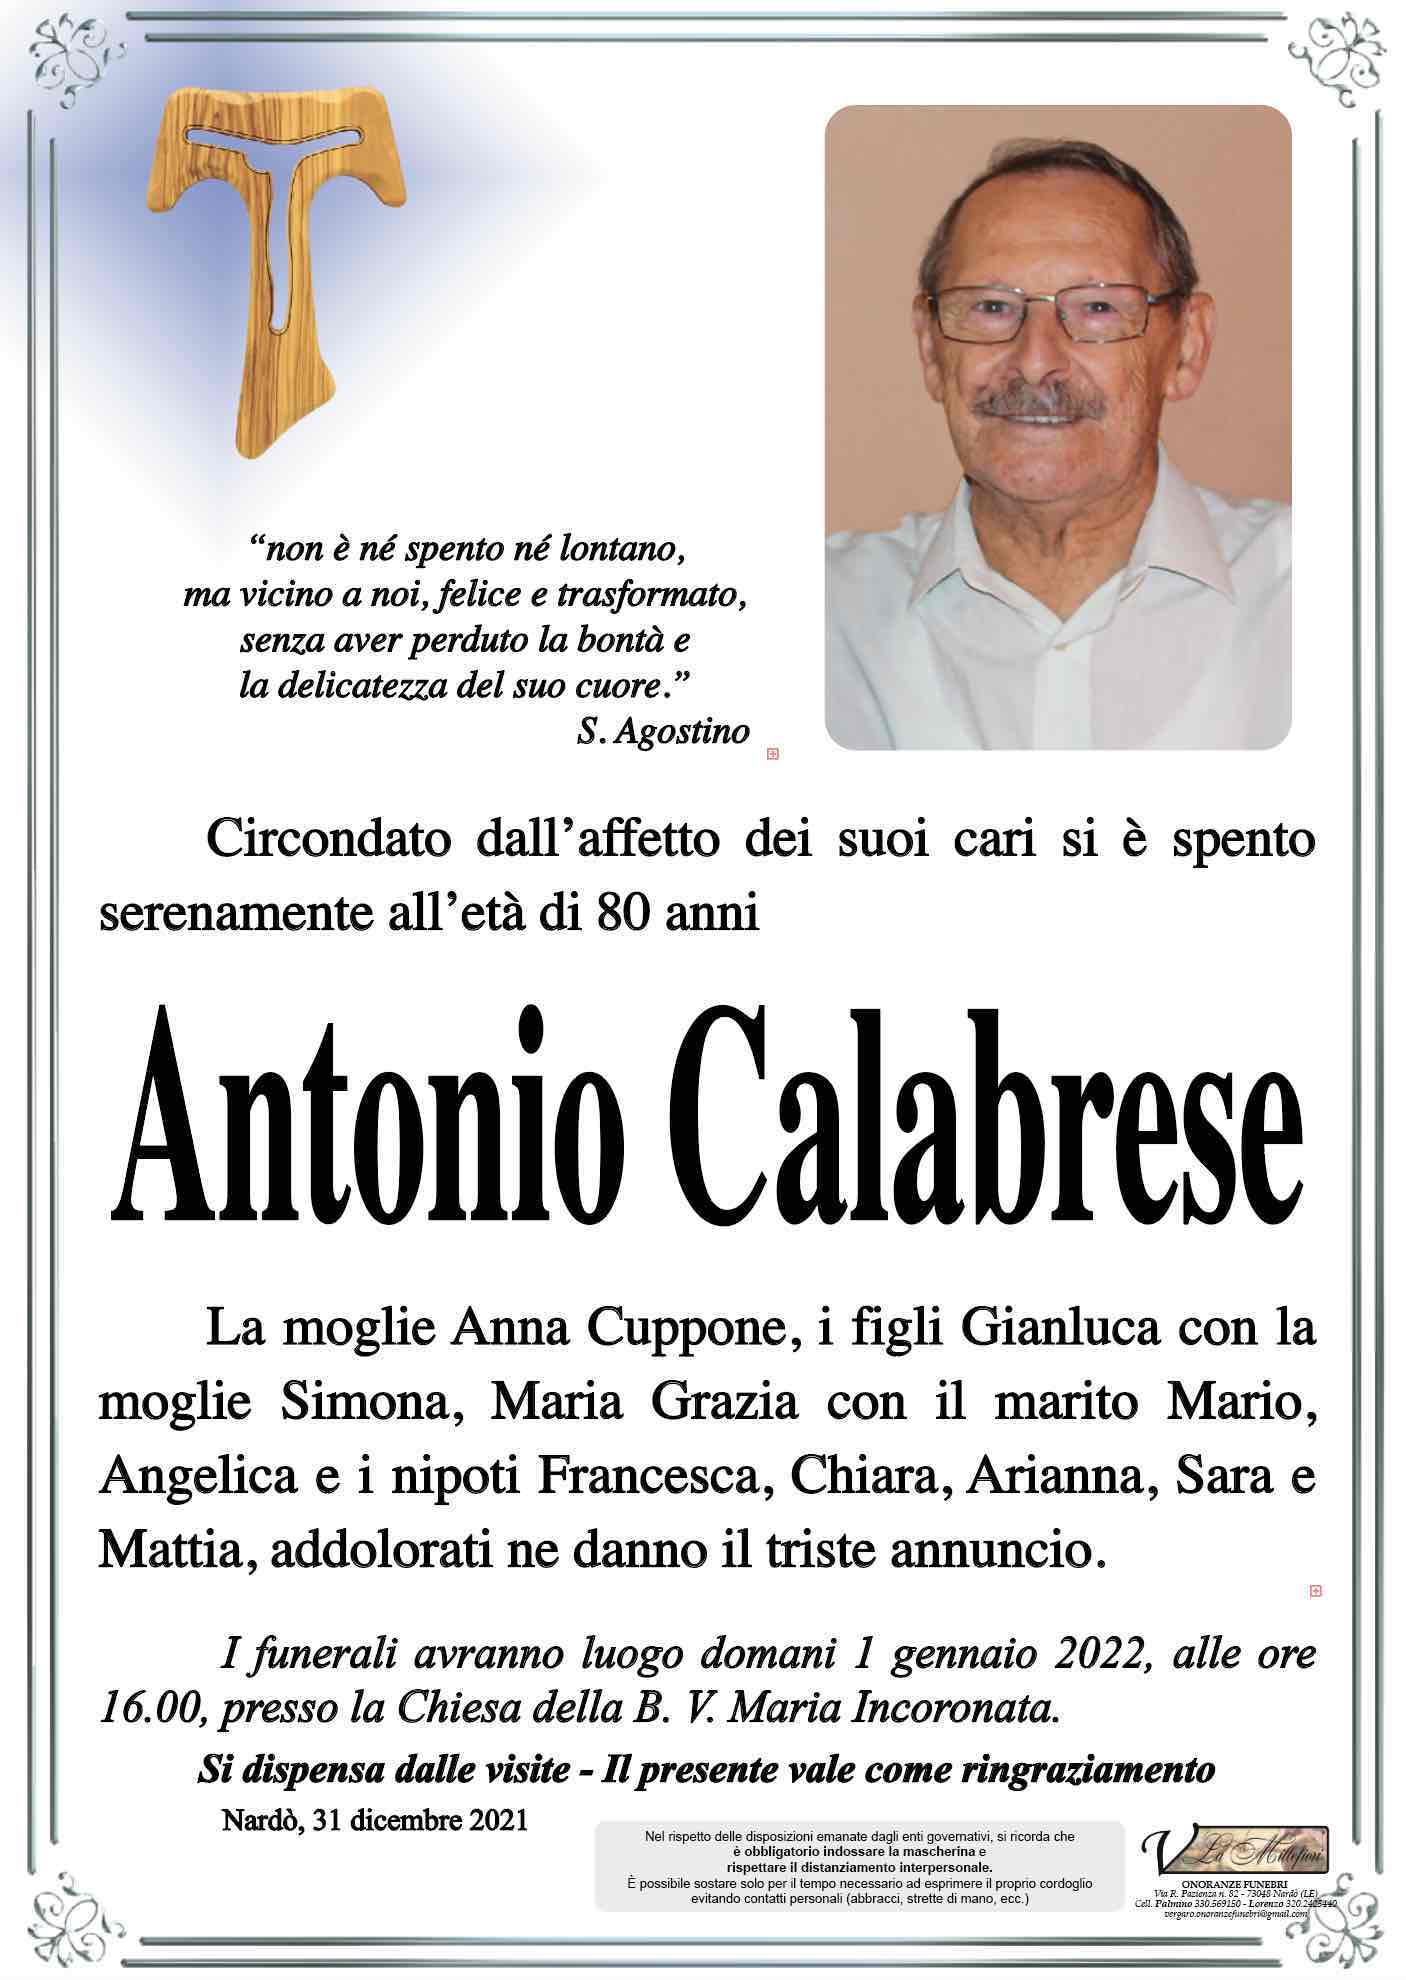 Antonio Calabrese